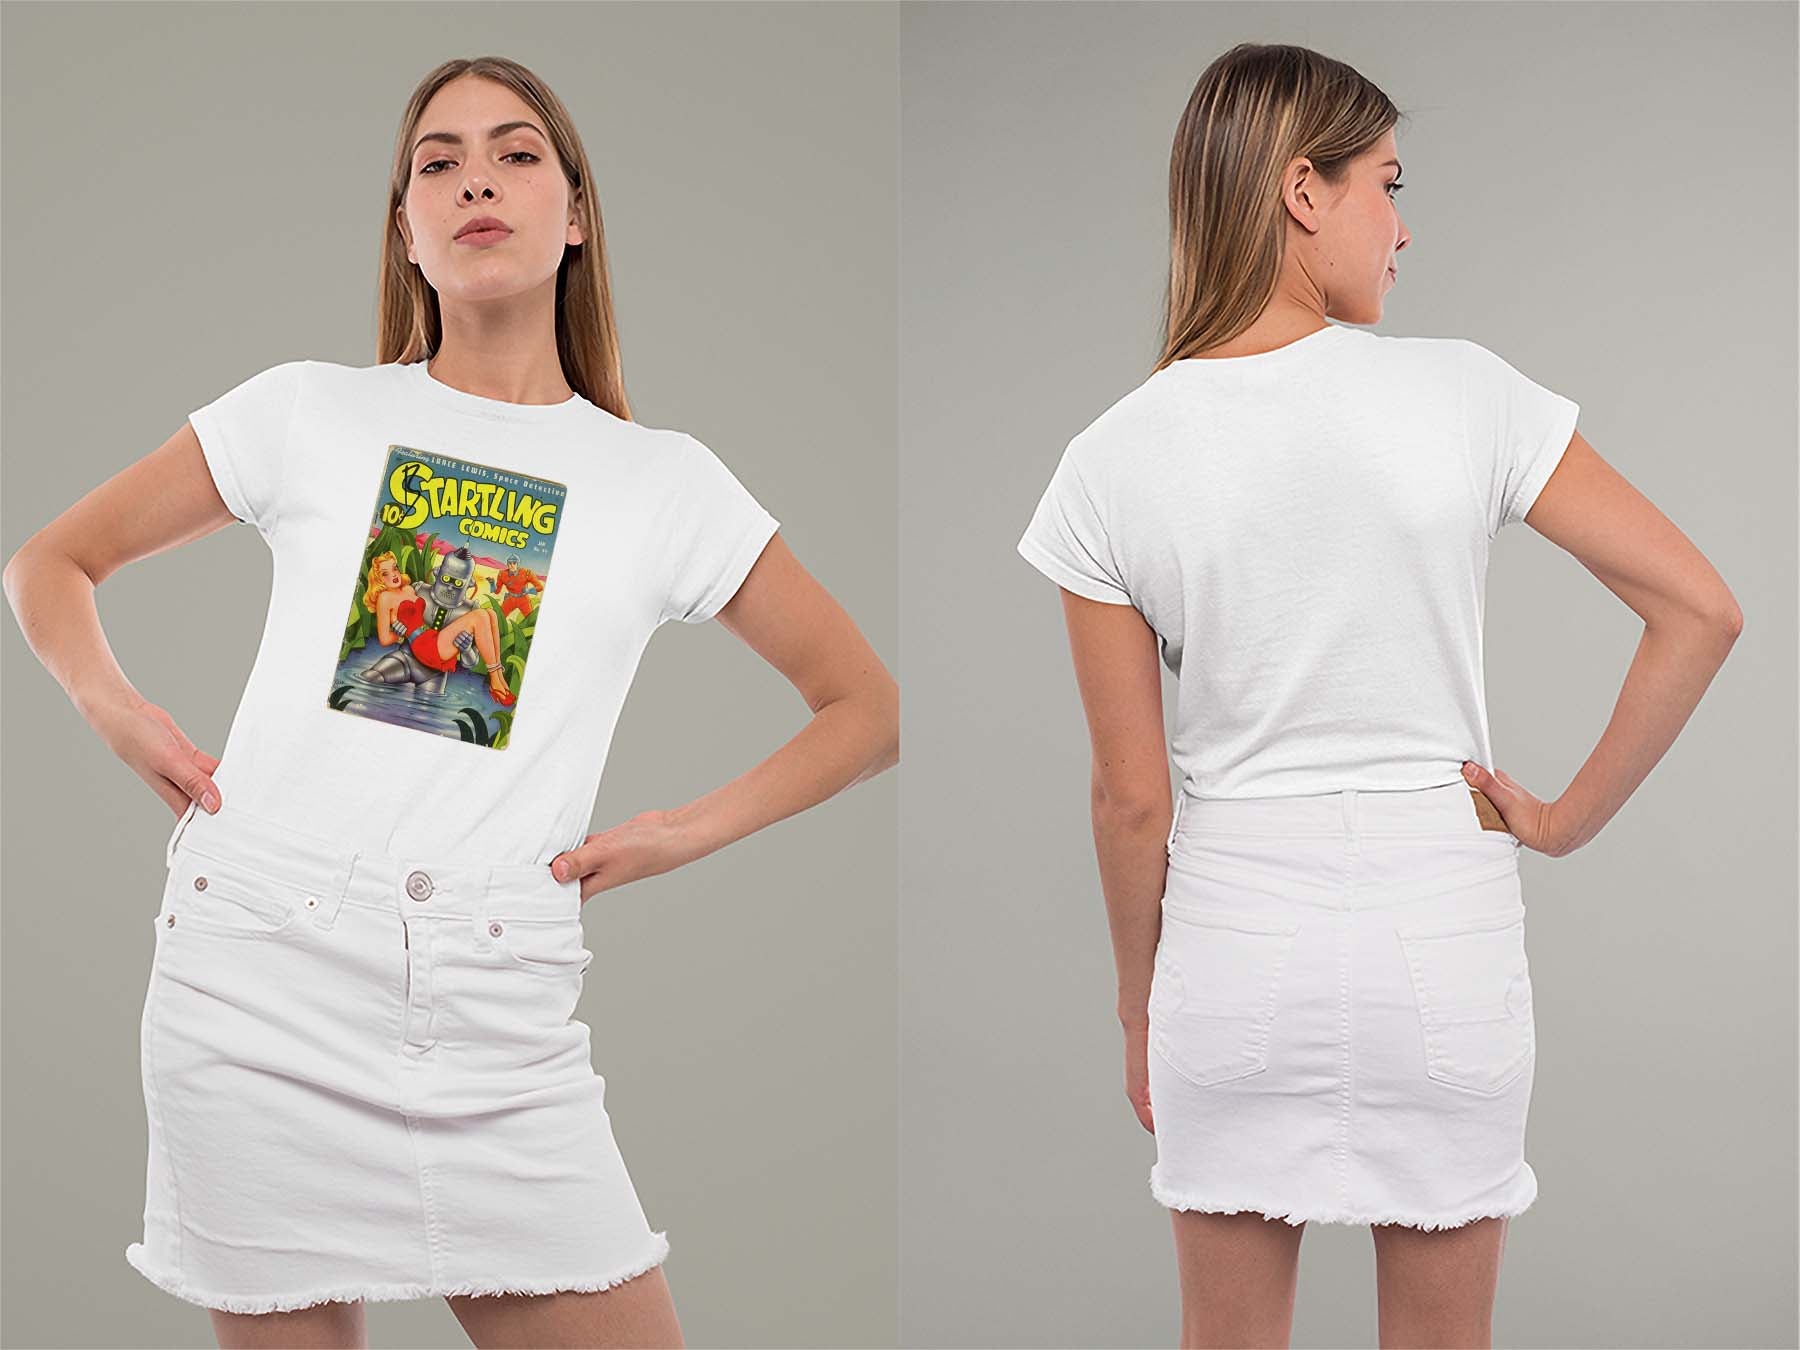 Startling Comics No39 Ladies Crew (Round) Neck Shirt Small White